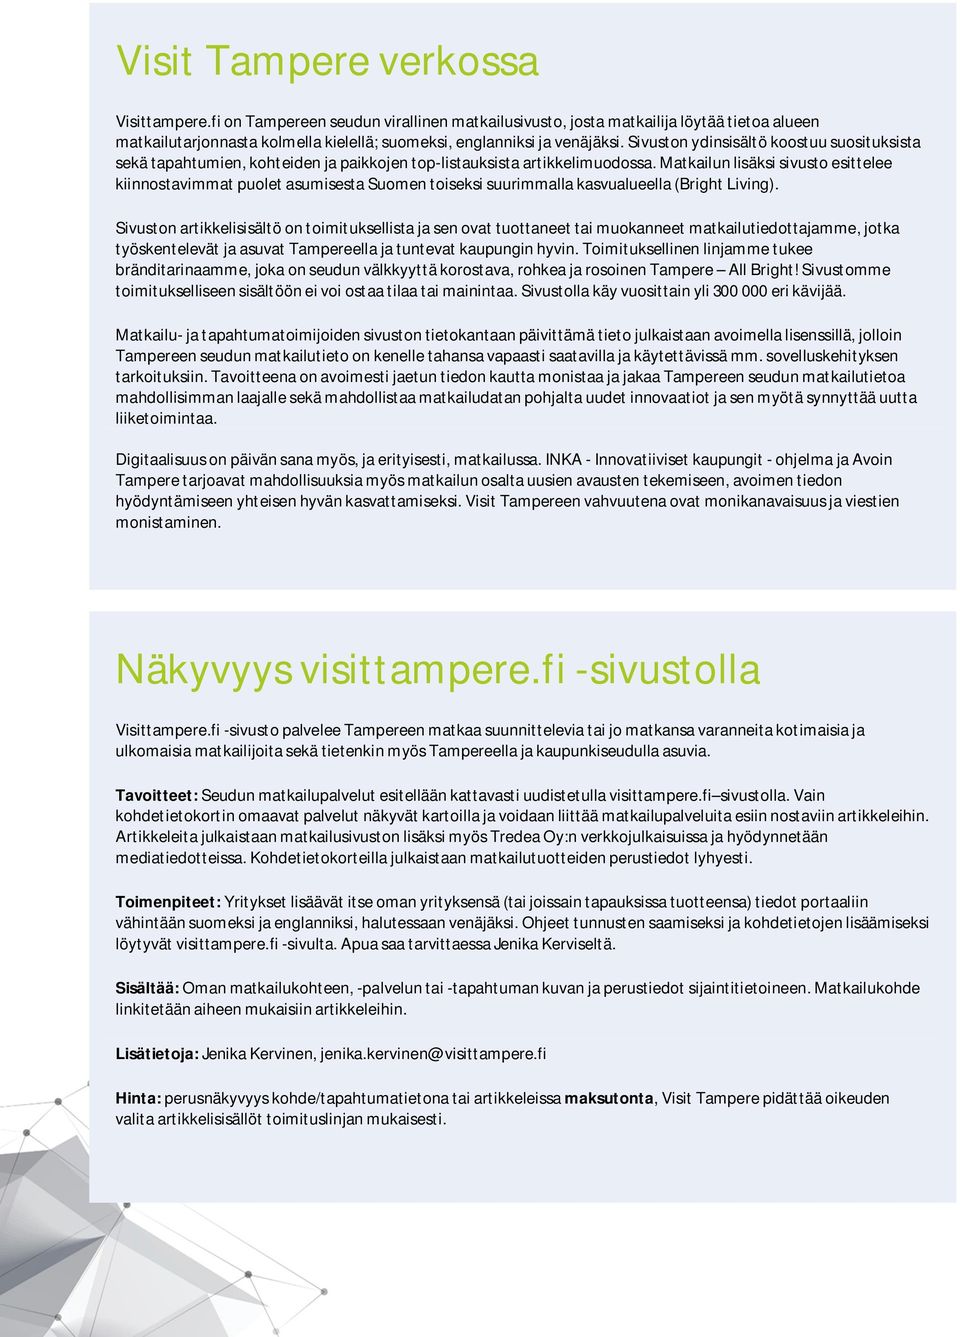 Matkailun lisäksi sivusto esittelee kiinnostavimmat puolet asumisesta Suomen toiseksi suurimmalla kasvualueella (Bright Living).